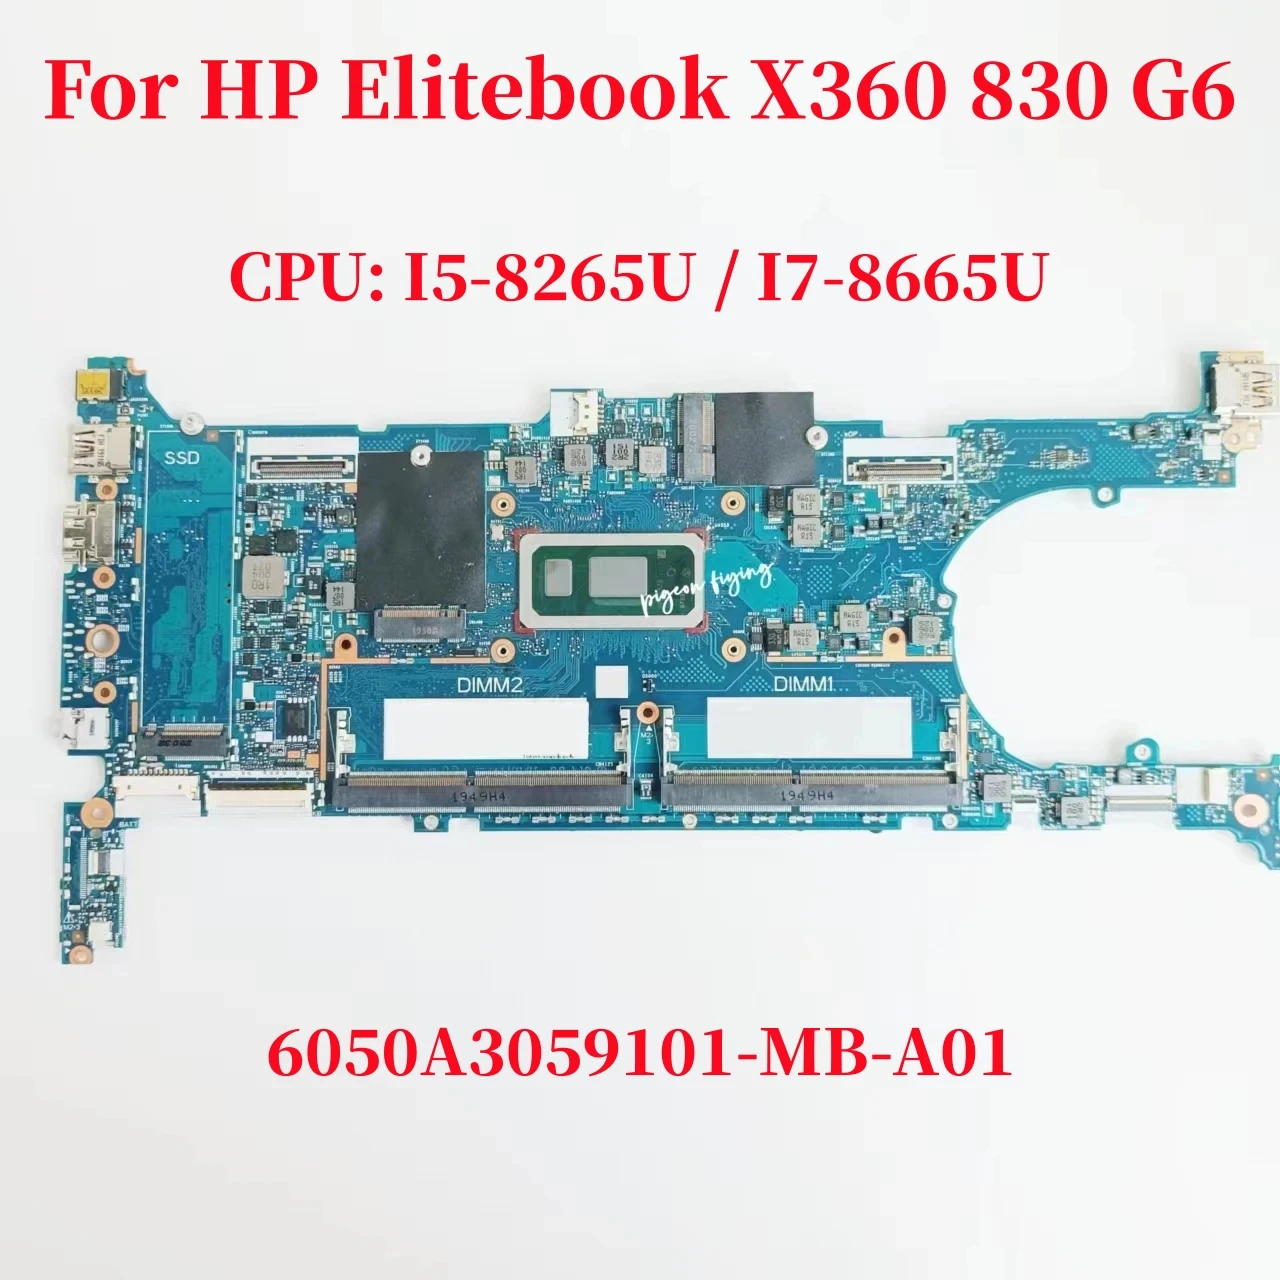 

6050A3059101 Mainboard For HP Elitebook X360 830 G6 Laptop Motherboard CPU:I5-8265U I7-8665U L64980-601 L64982-601 L64981-601